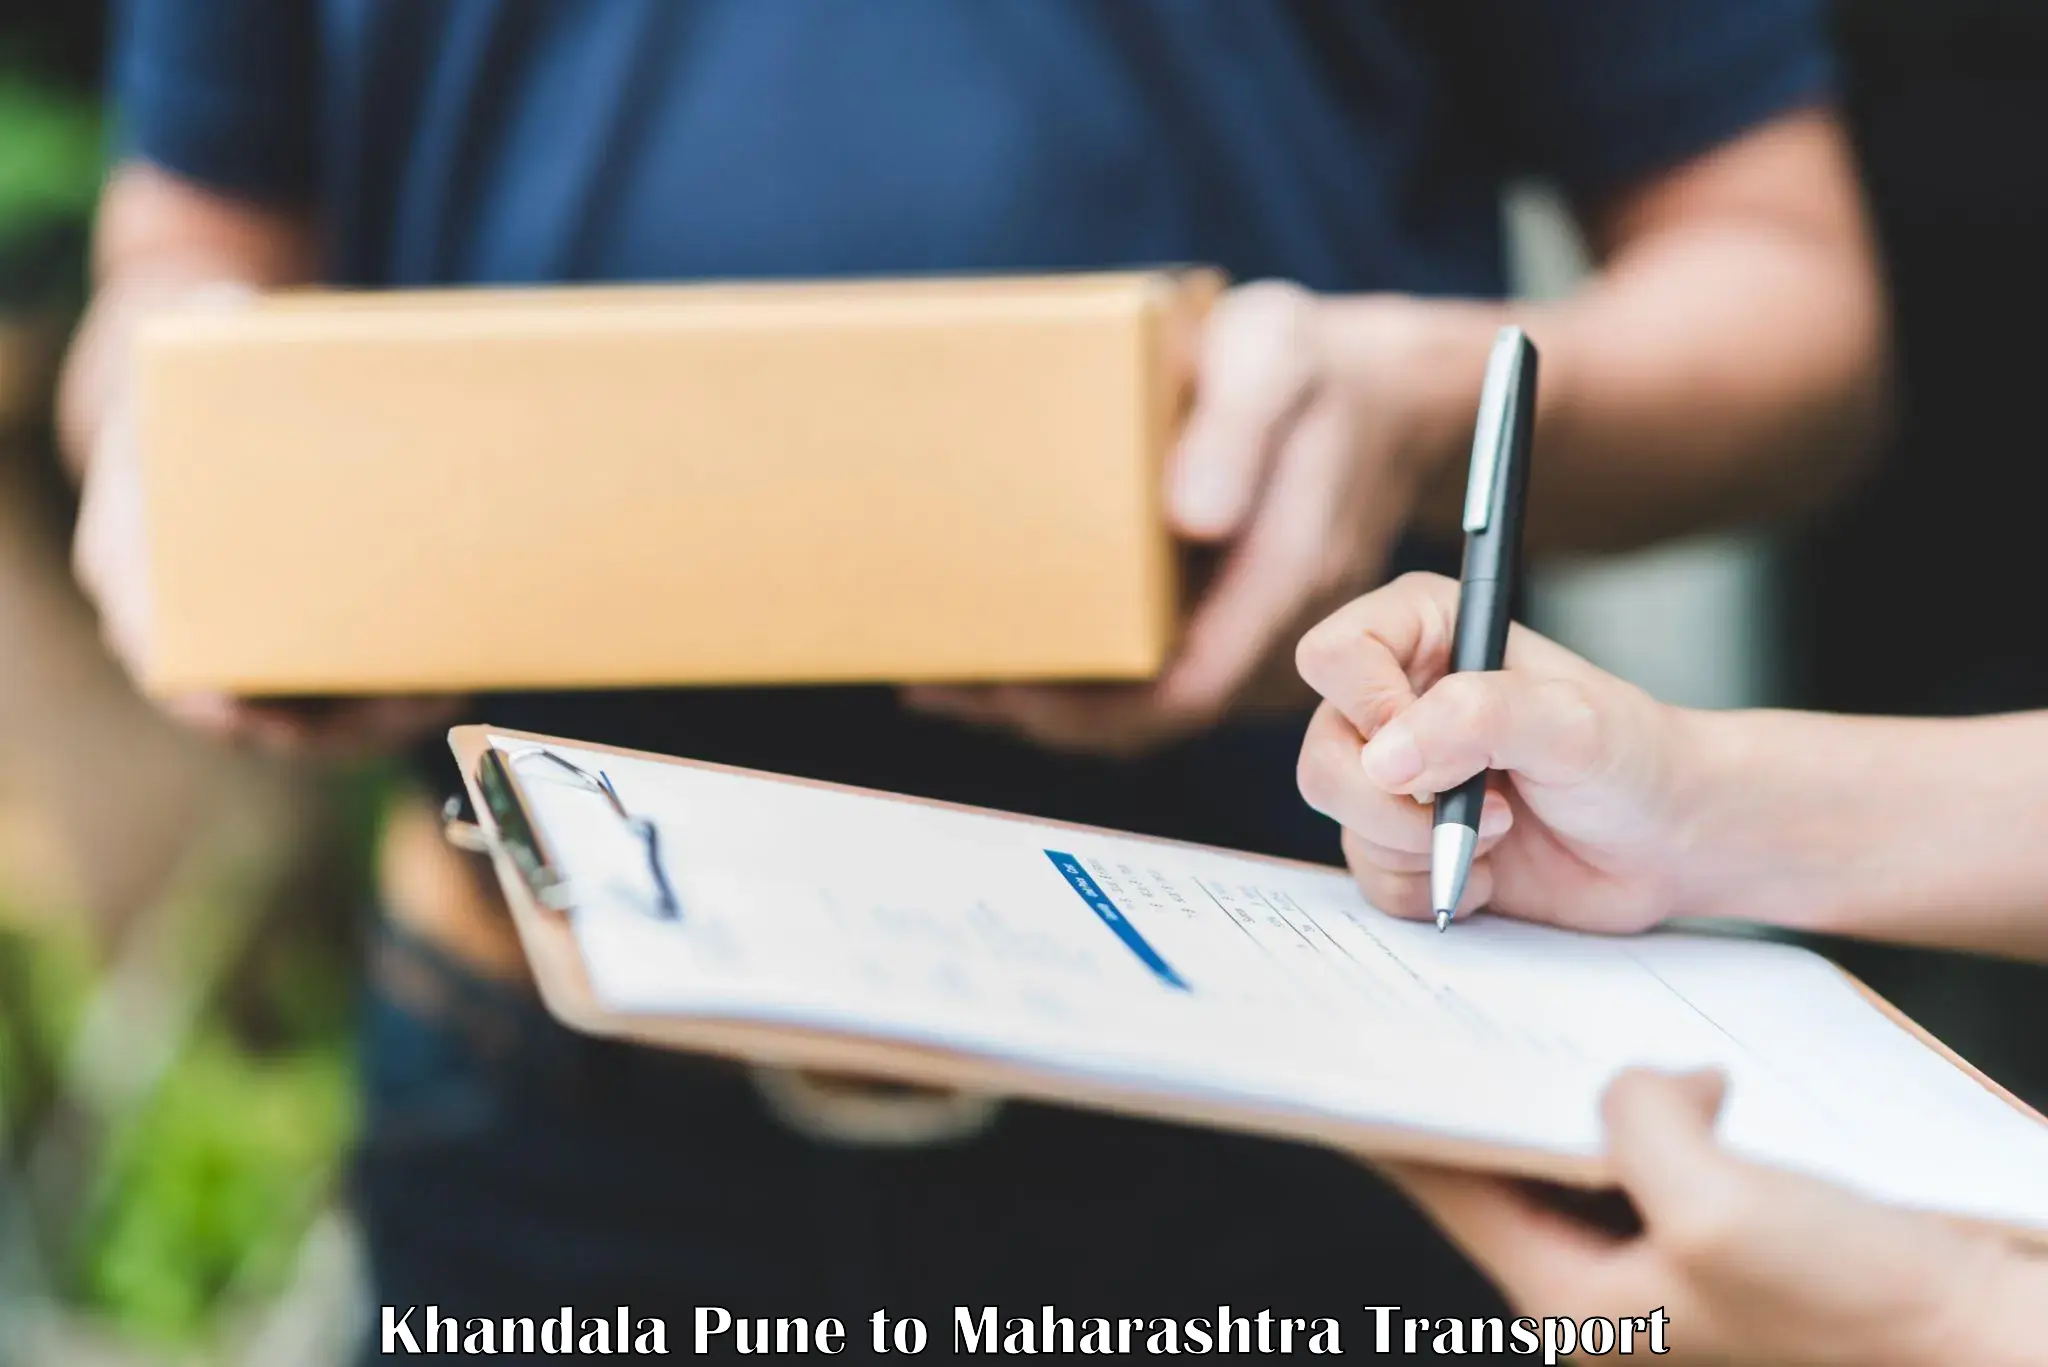 Cargo transport services Khandala Pune to Maharashtra